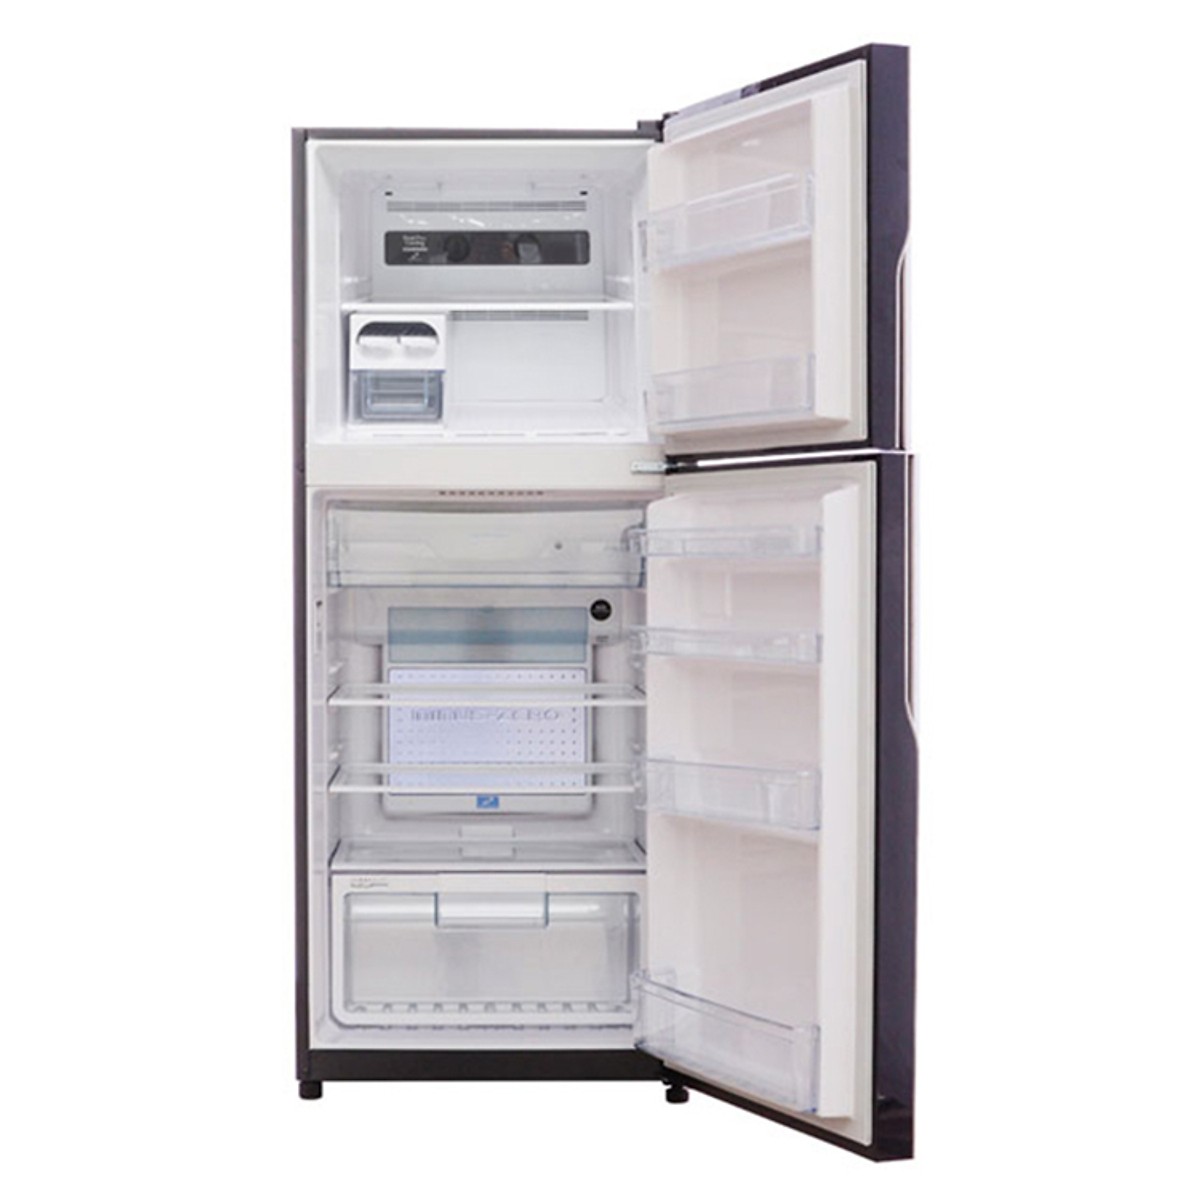 Tủ Lạnh Inverter Hitachi R-VG440PGV3-GBK (365L) - Hàng Chính Hãng + Tặng Bình Đun Siêu Tốc